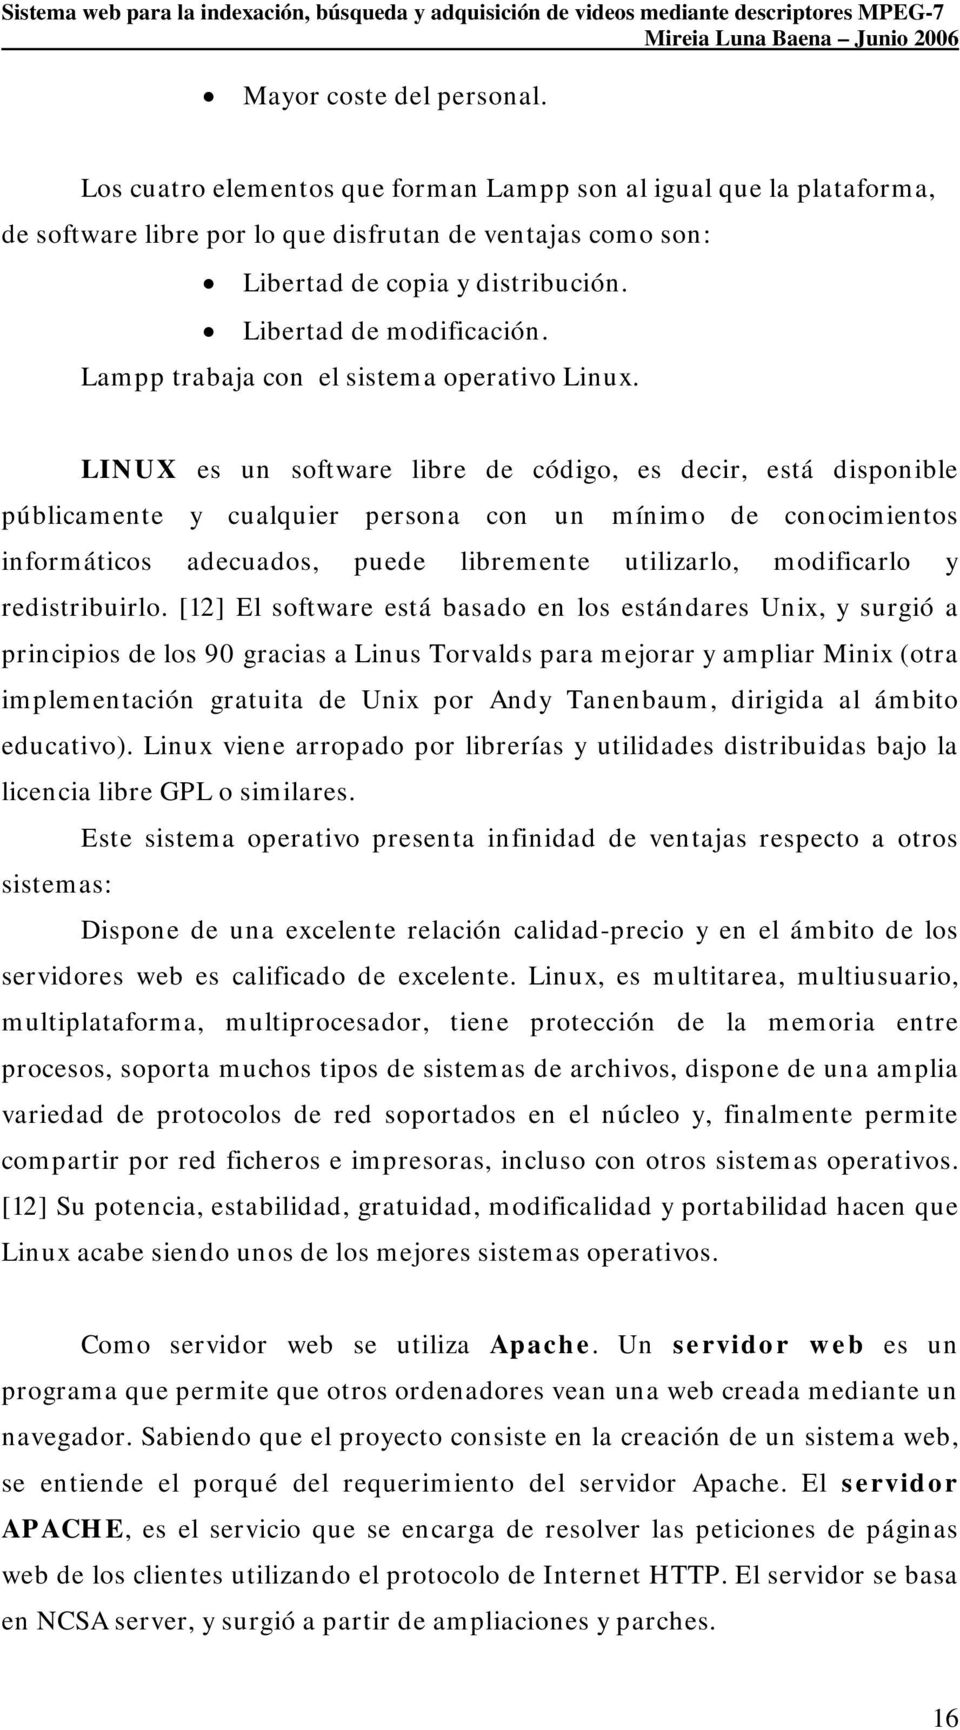 LINUX es un software libre de código, es decir, está disponible públicamente y cualquier persona con un mínimo de conocimientos informáticos adecuados, puede libremente utilizarlo, modificarlo y